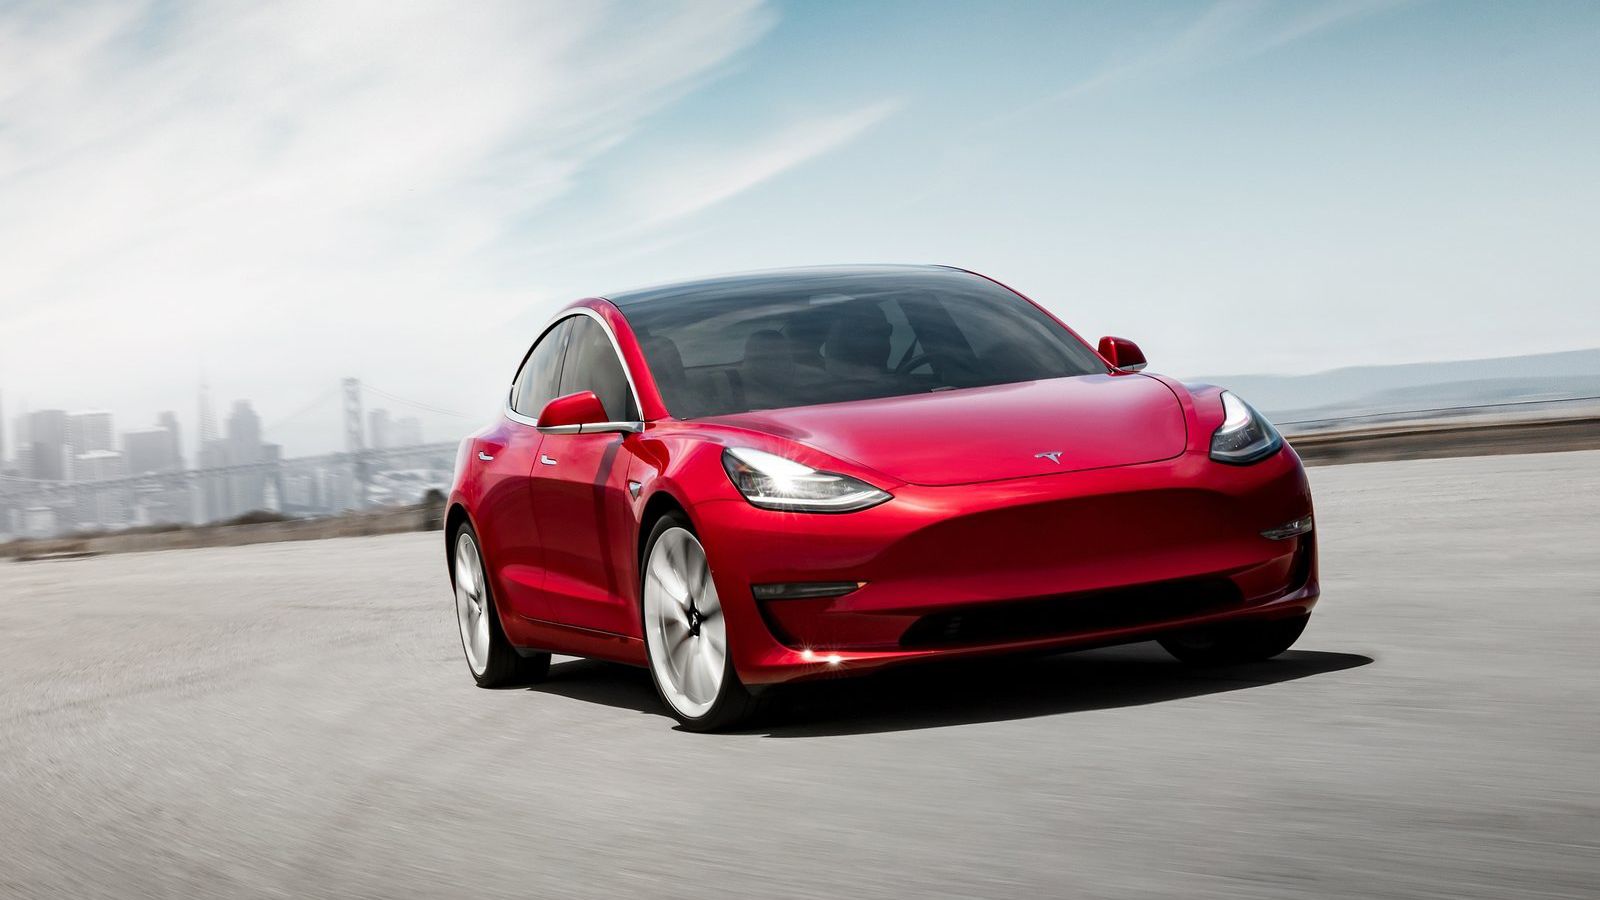 Με προκαταβολή λίγο πάνω από τις 8.000 ευρώ και μηνιαίο μίσθωμα 485 ευρώ, προσφέρει η ALD Automotive το Tesla Model 3.